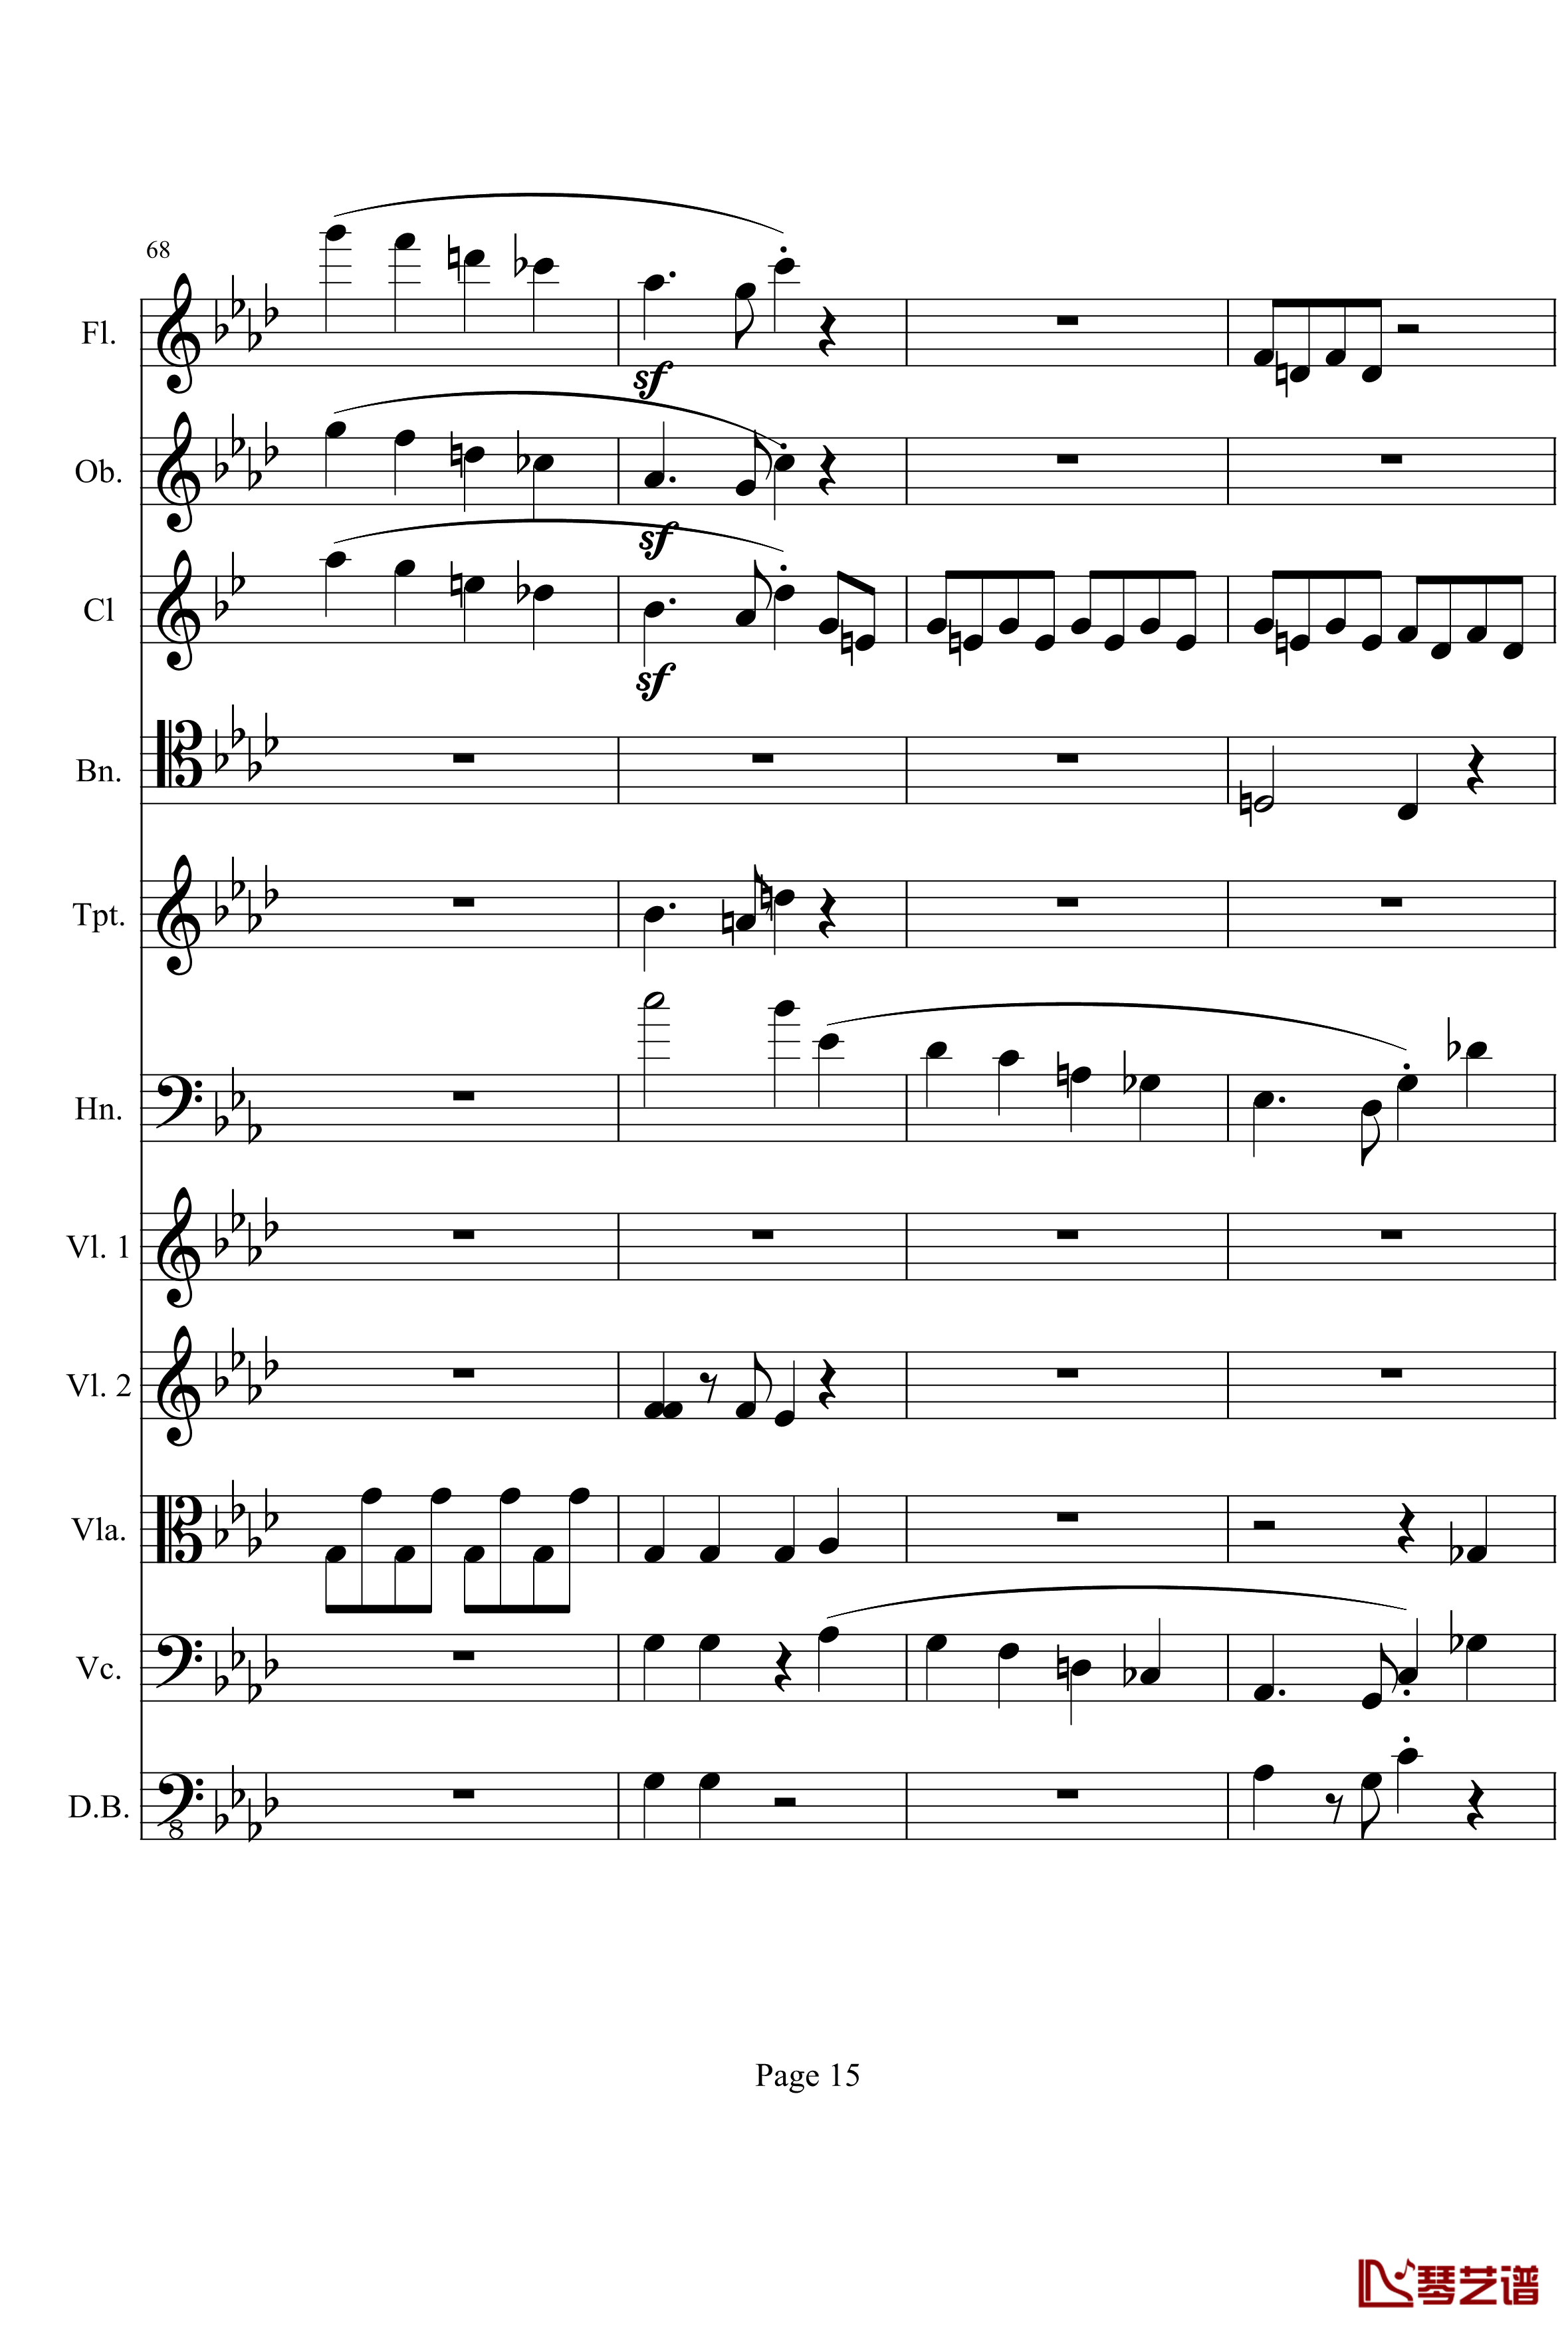 奏鸣曲之交响钢琴谱-第1首-Ⅰ-贝多芬-beethoven15